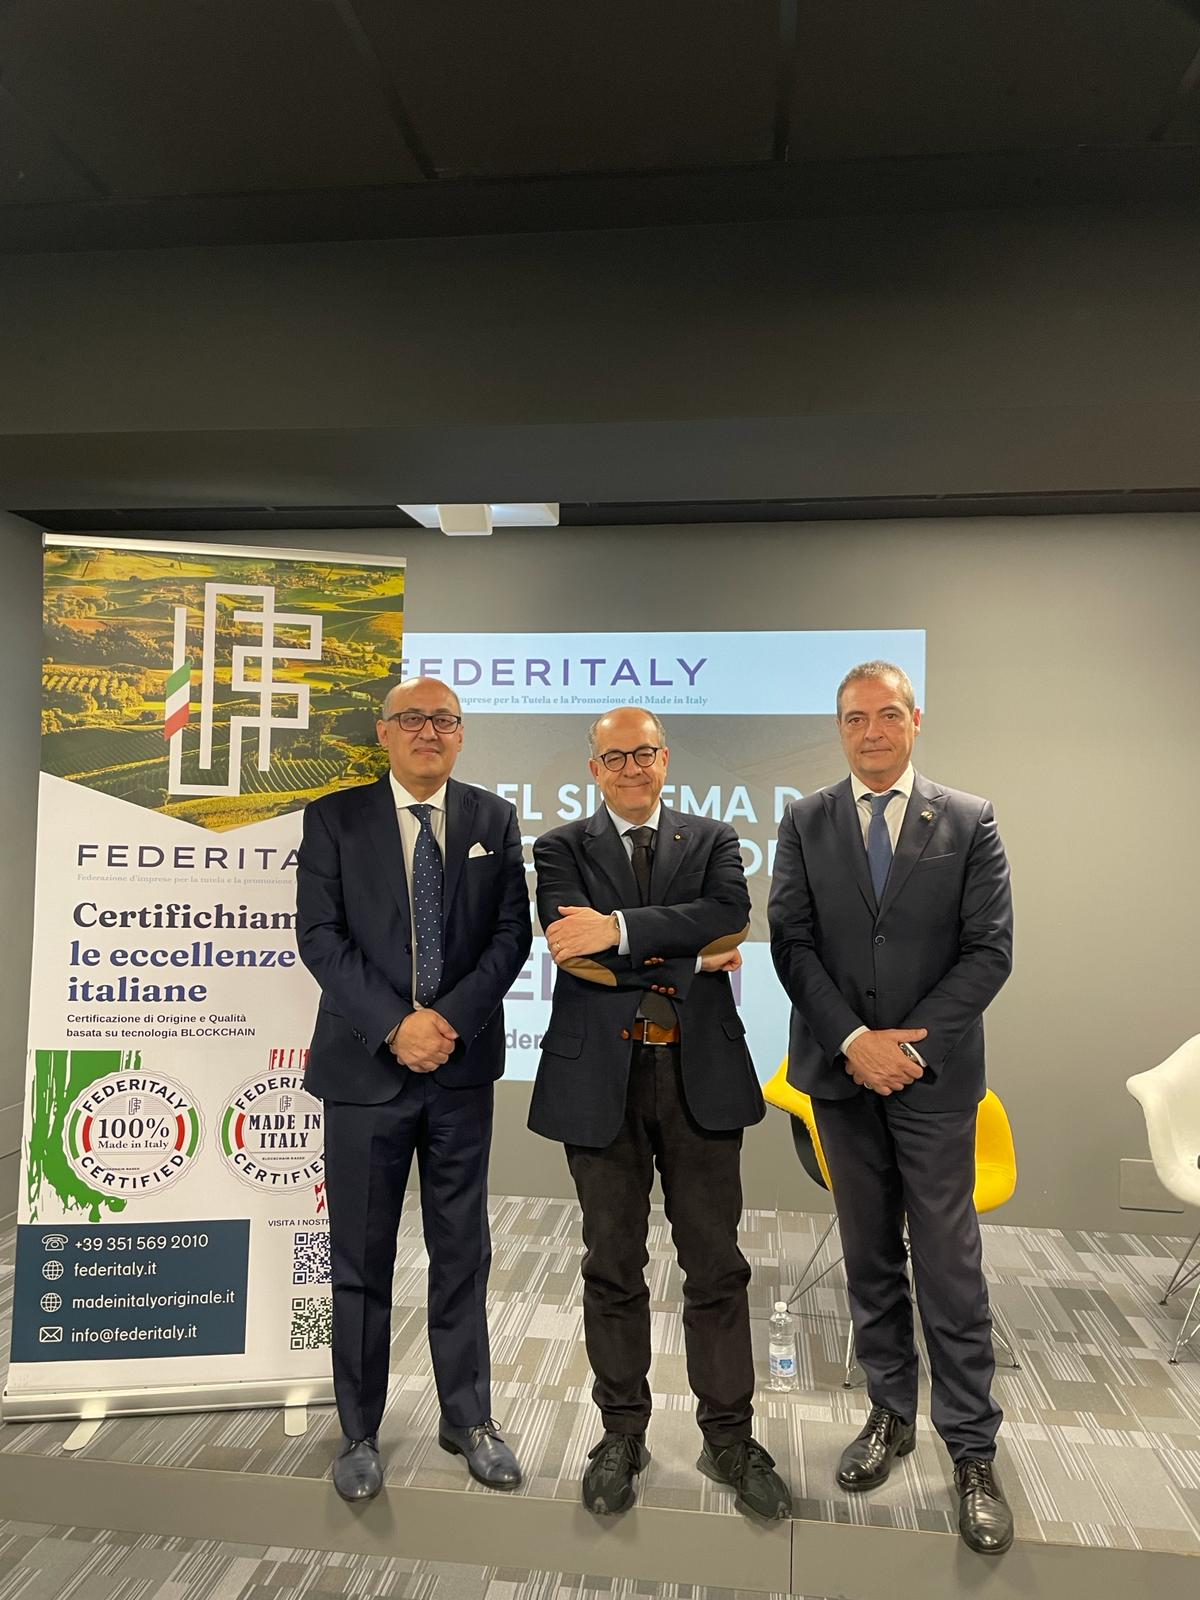 Roma: Federitaly, creazione nuovi Consorzi DOP e IGP per valorizzare aree interne